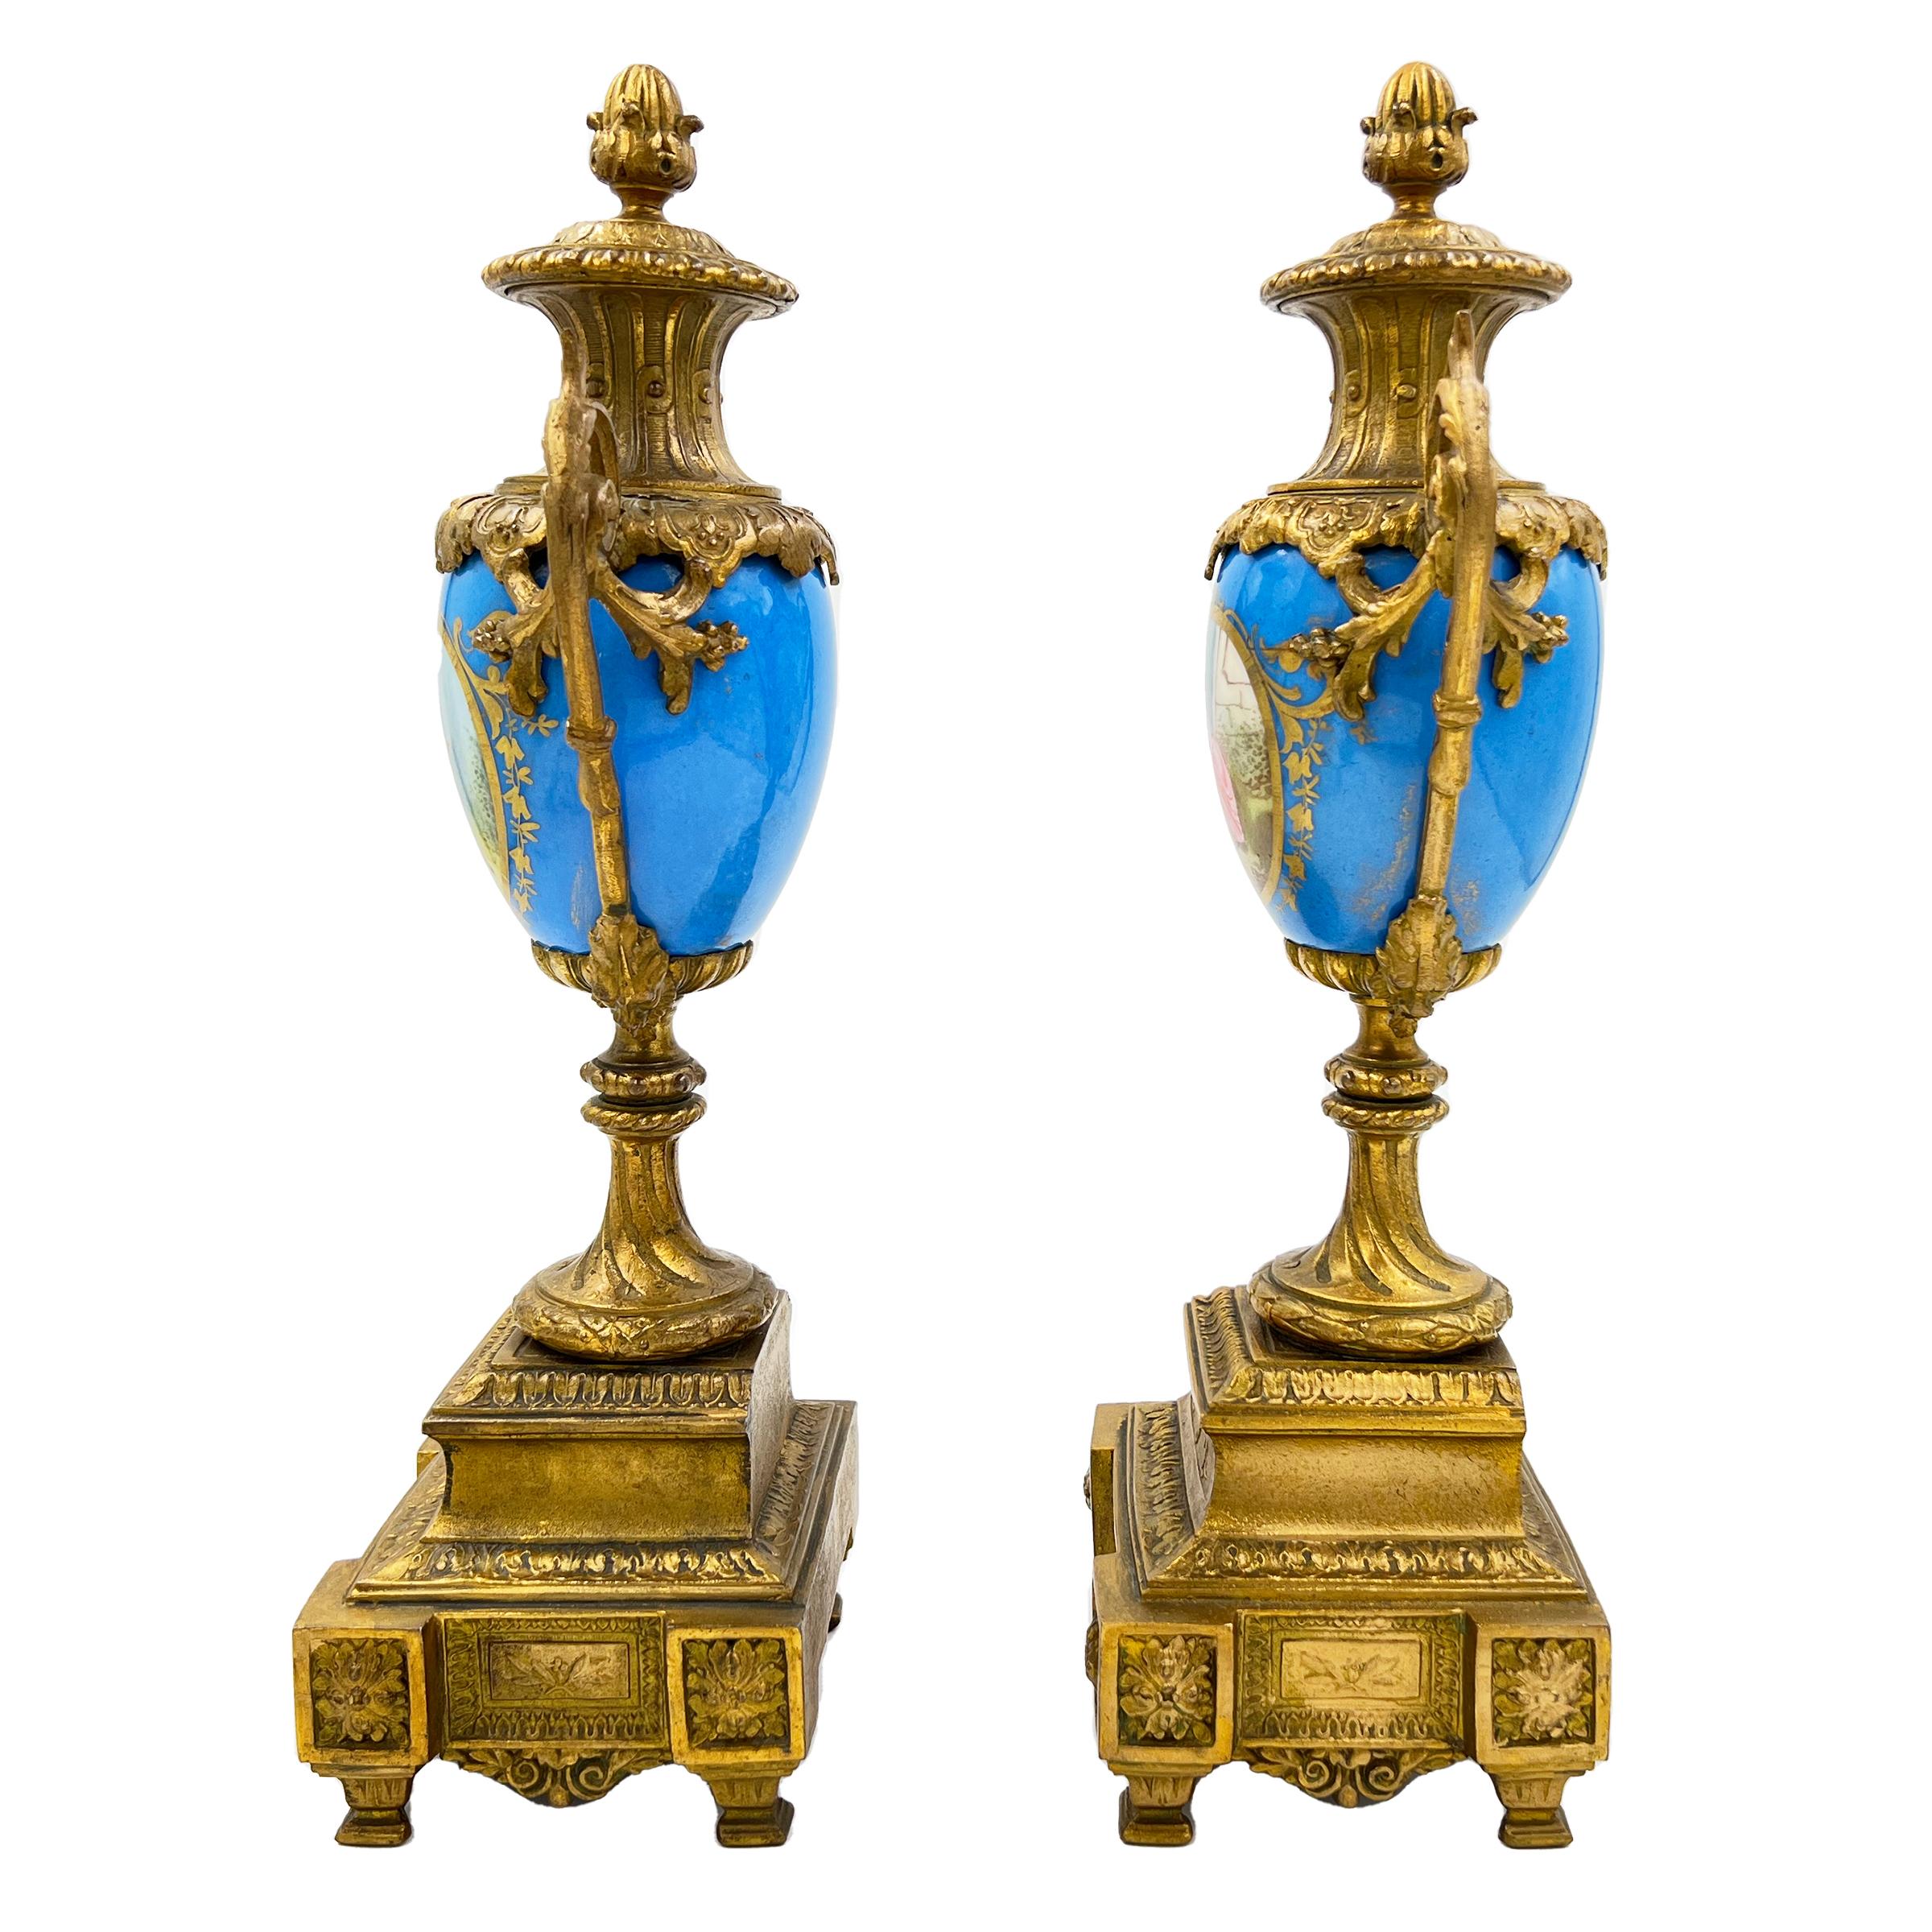 Exquisites Paar französischer Porzellanurnen im Stil von Sèvres mit vergoldeten Bronzebeschlägen, die ein himmelblaues Porzellan und idyllische ländliche Szenen zeigen.
